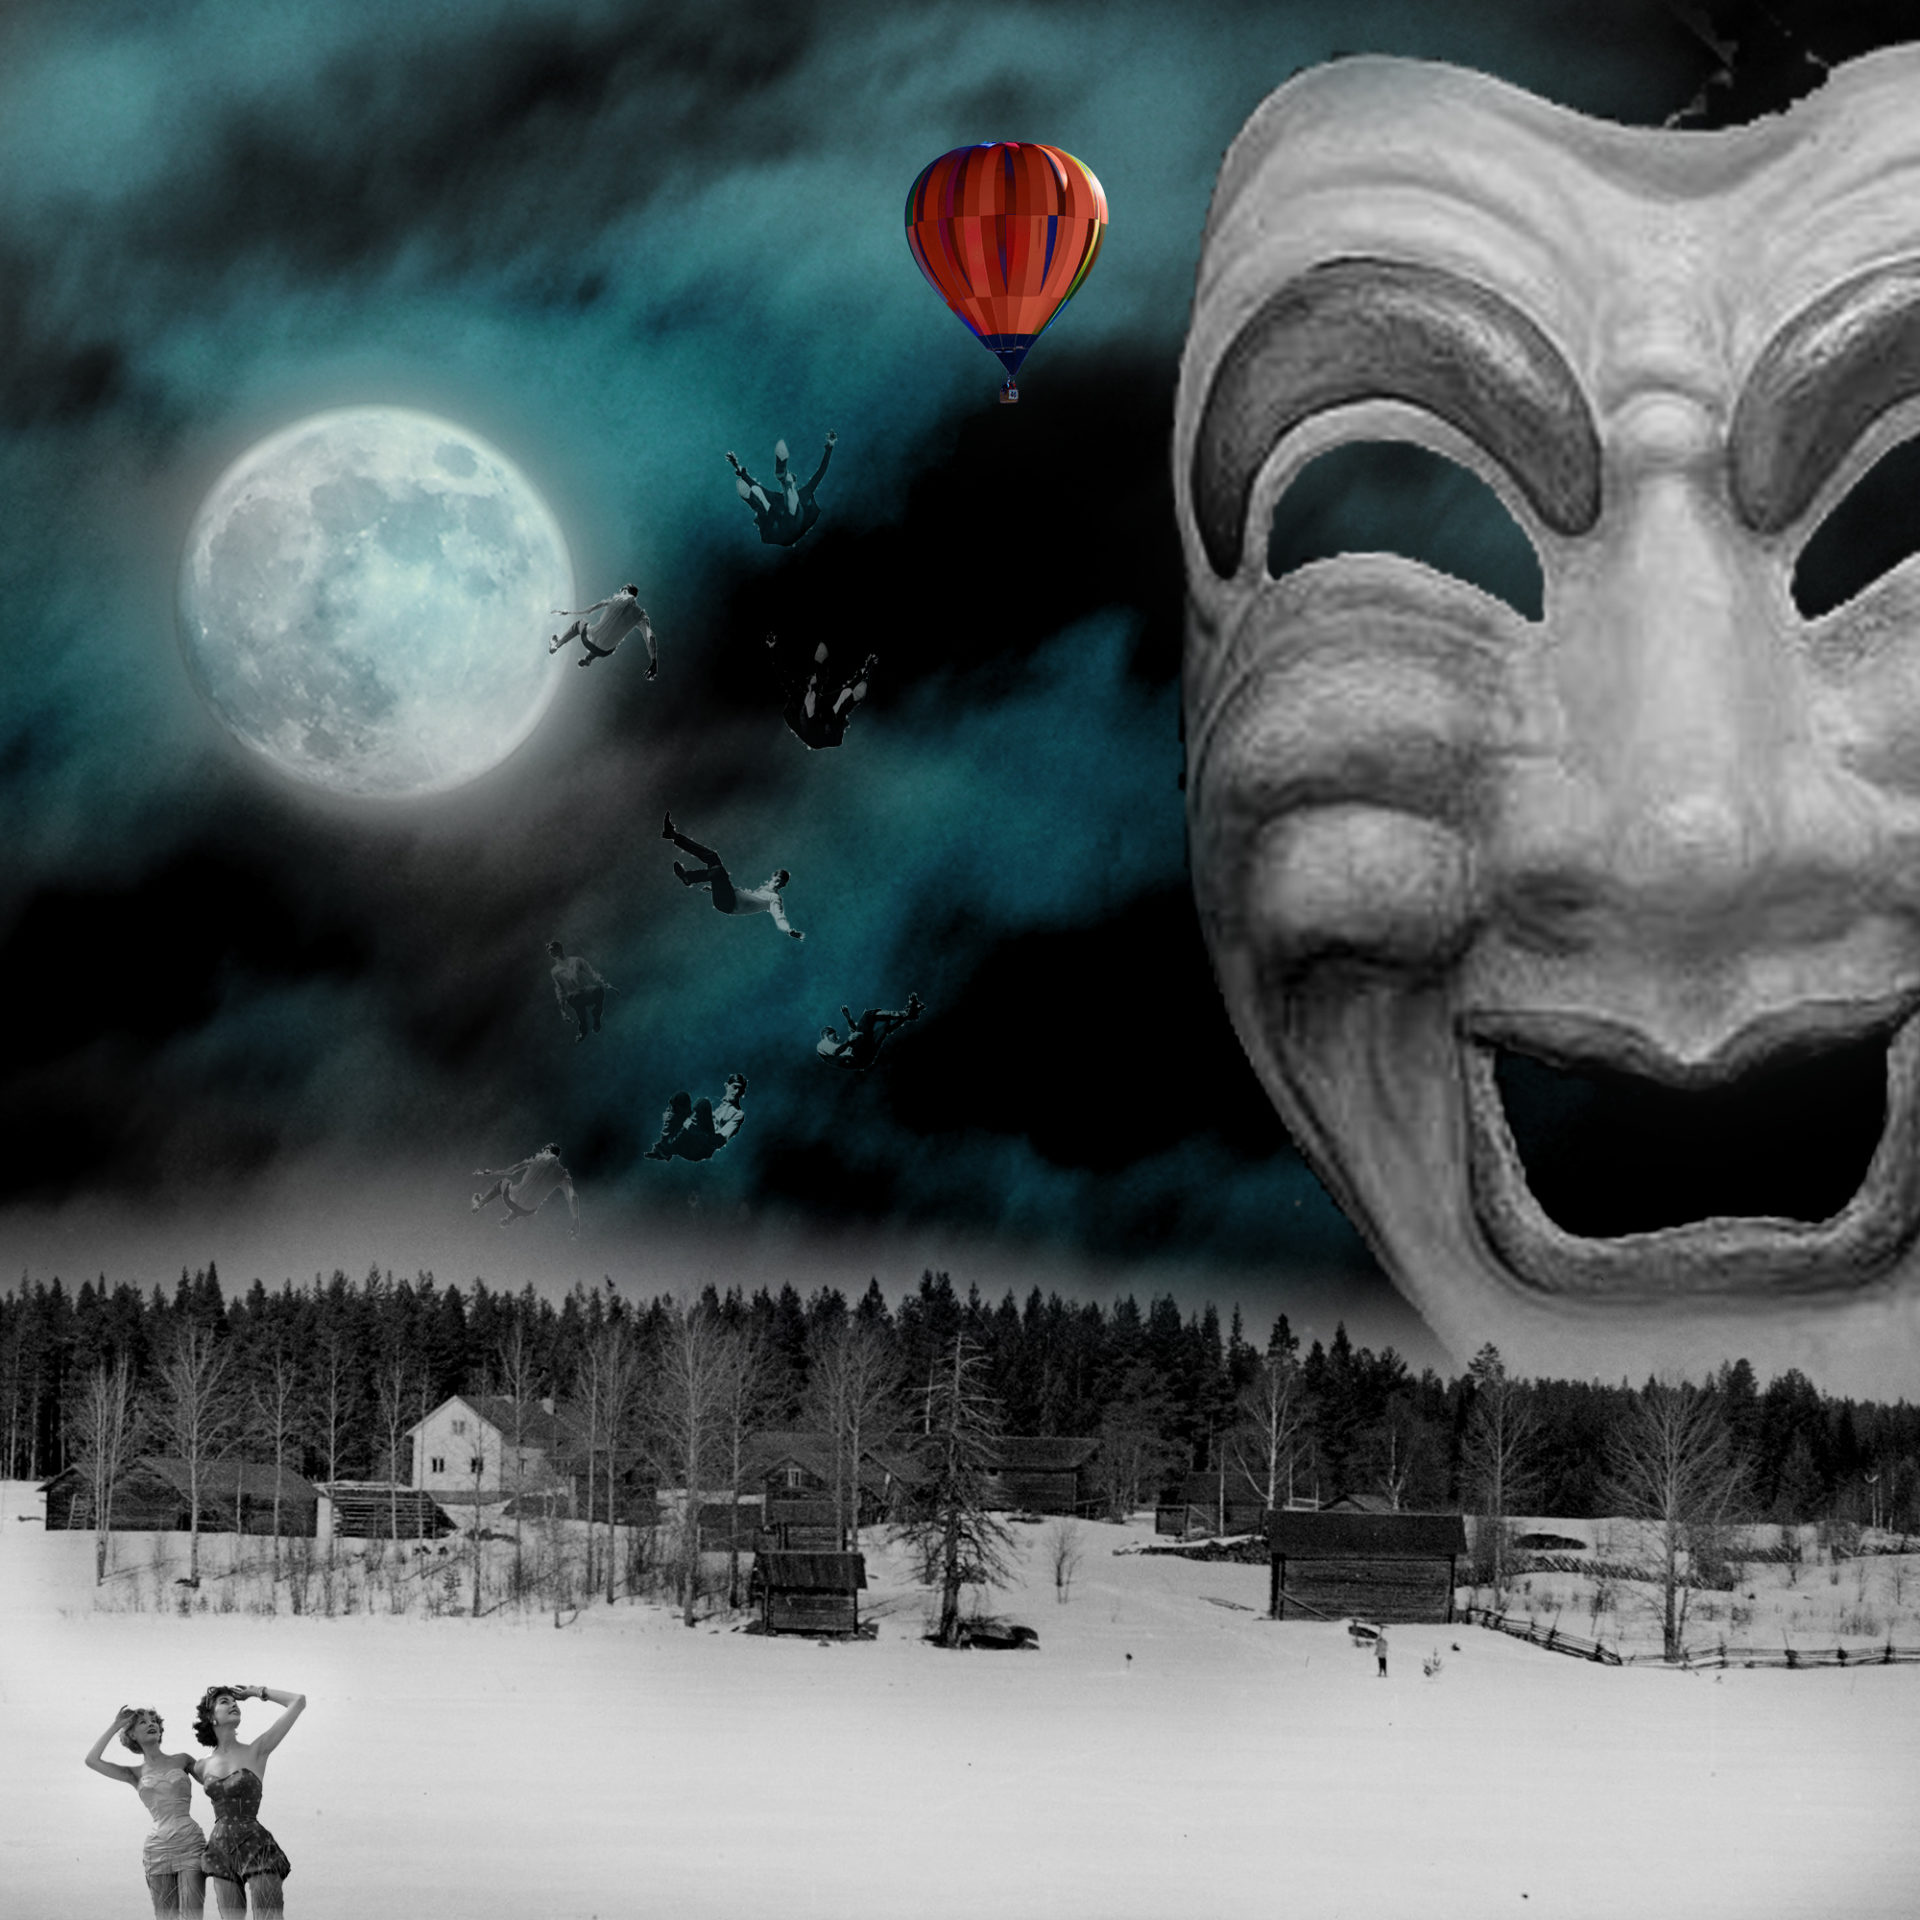 El influjo de la Luna III: Burlesque. Paisaje nocturno con luna, una gran máscara y hombres cayendo de un globo. Loco Mundo Arte y Bohemia